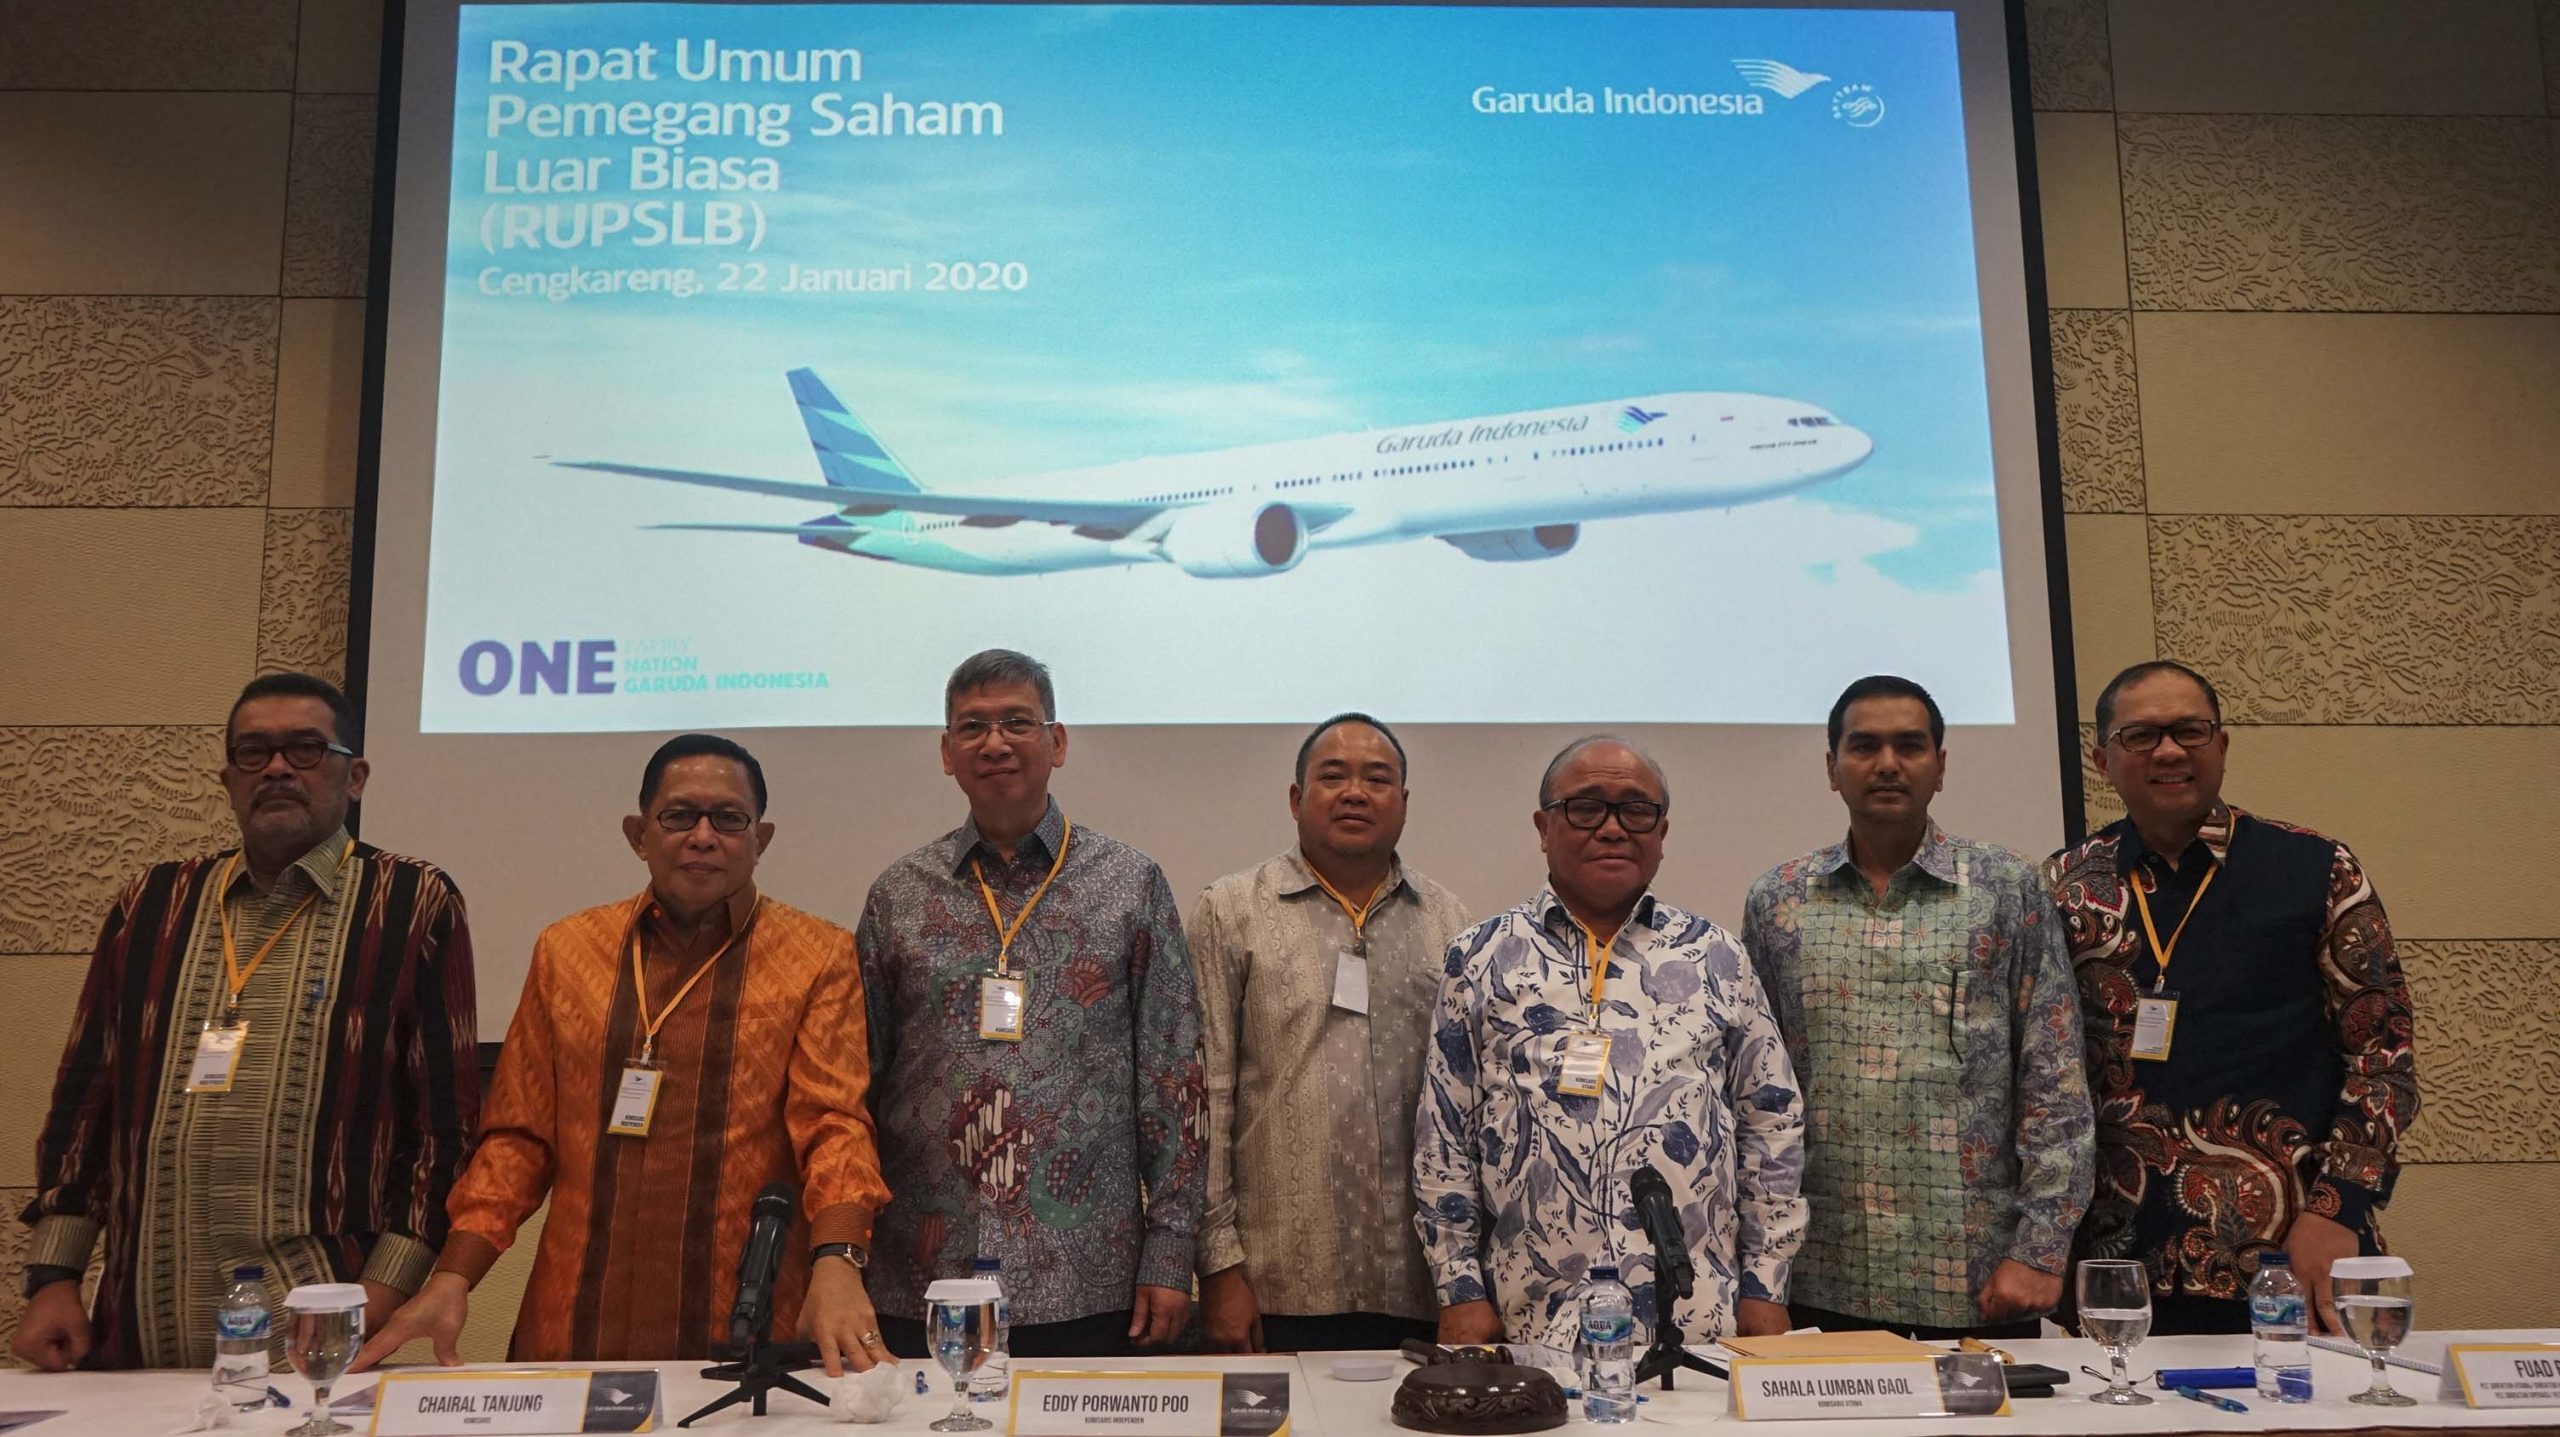 Rapat Umum Pemegang Saham Luar Biasa (RUPSLB) Garuda Indonesia Menetapkan Irfan Setiaputra Sebagai Direktur Utama